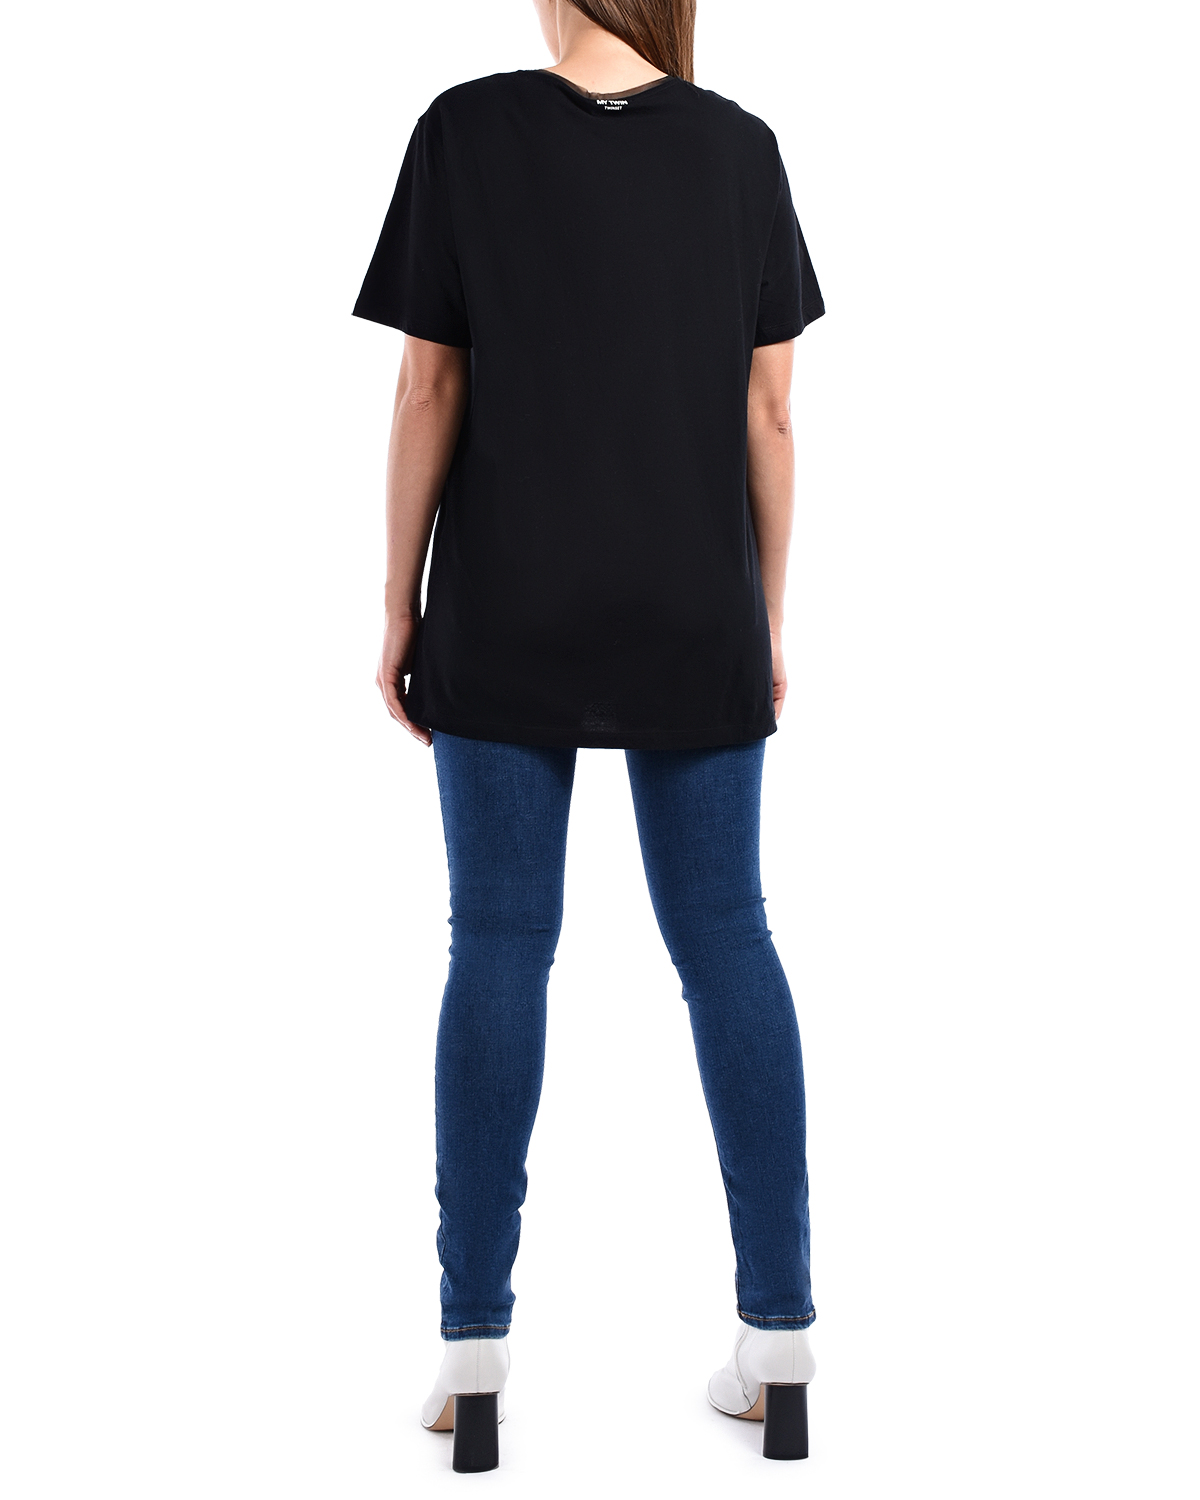 Черная футболка с принтом "гитара" TWINSET, размер 42, цвет черный - фото 4